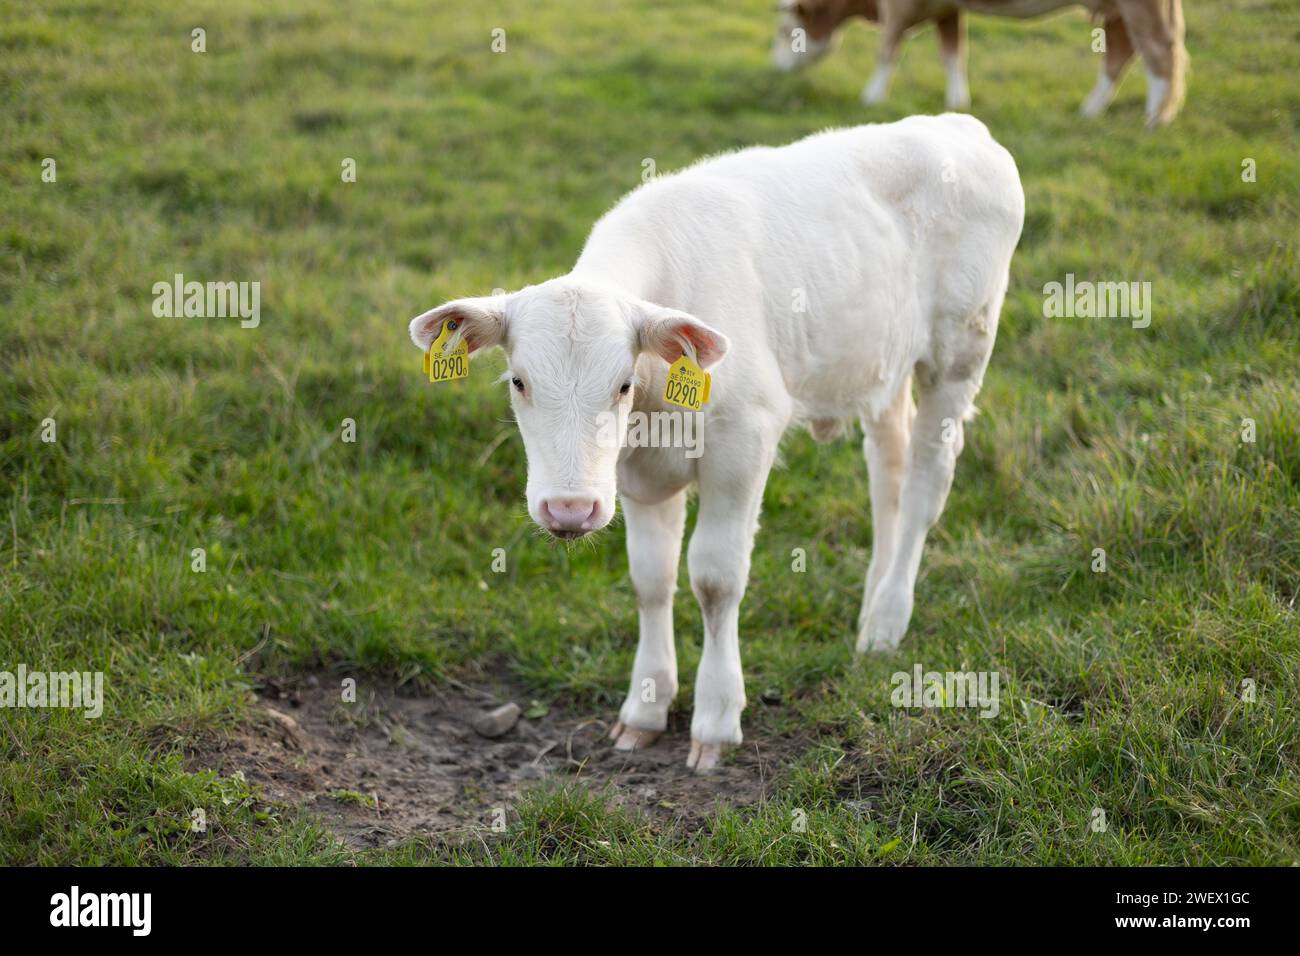 Un vitello bianco con etichette auricolari gialle in un prato verde Foto Stock